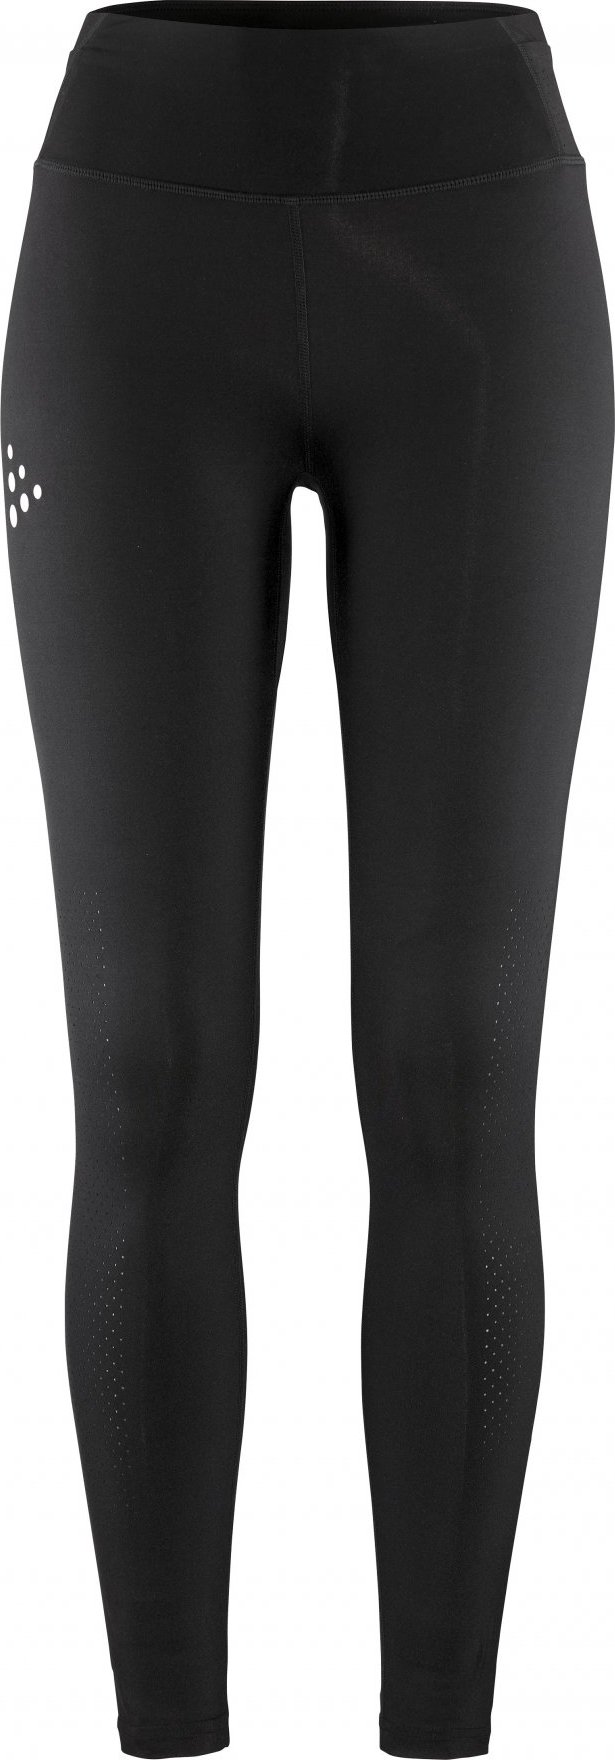 Dámské běžecké kalhoty CRAFT PRO Hypervent 2 - černá Velikost: L